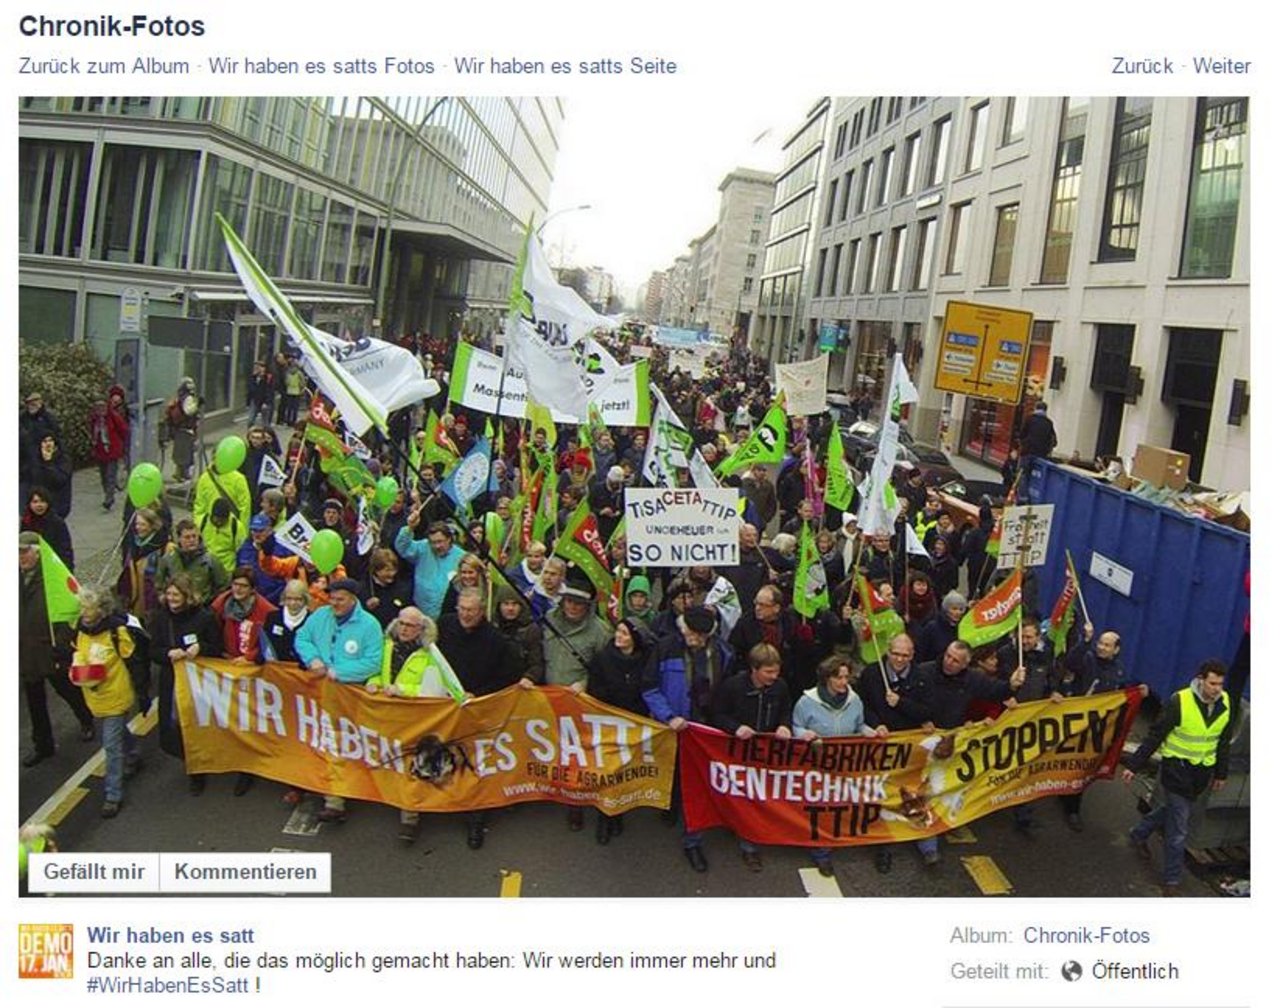 Bildschirmausschnitt eines auf Facebook geteilten Bild der heutigen Demonstration in Berlin. 